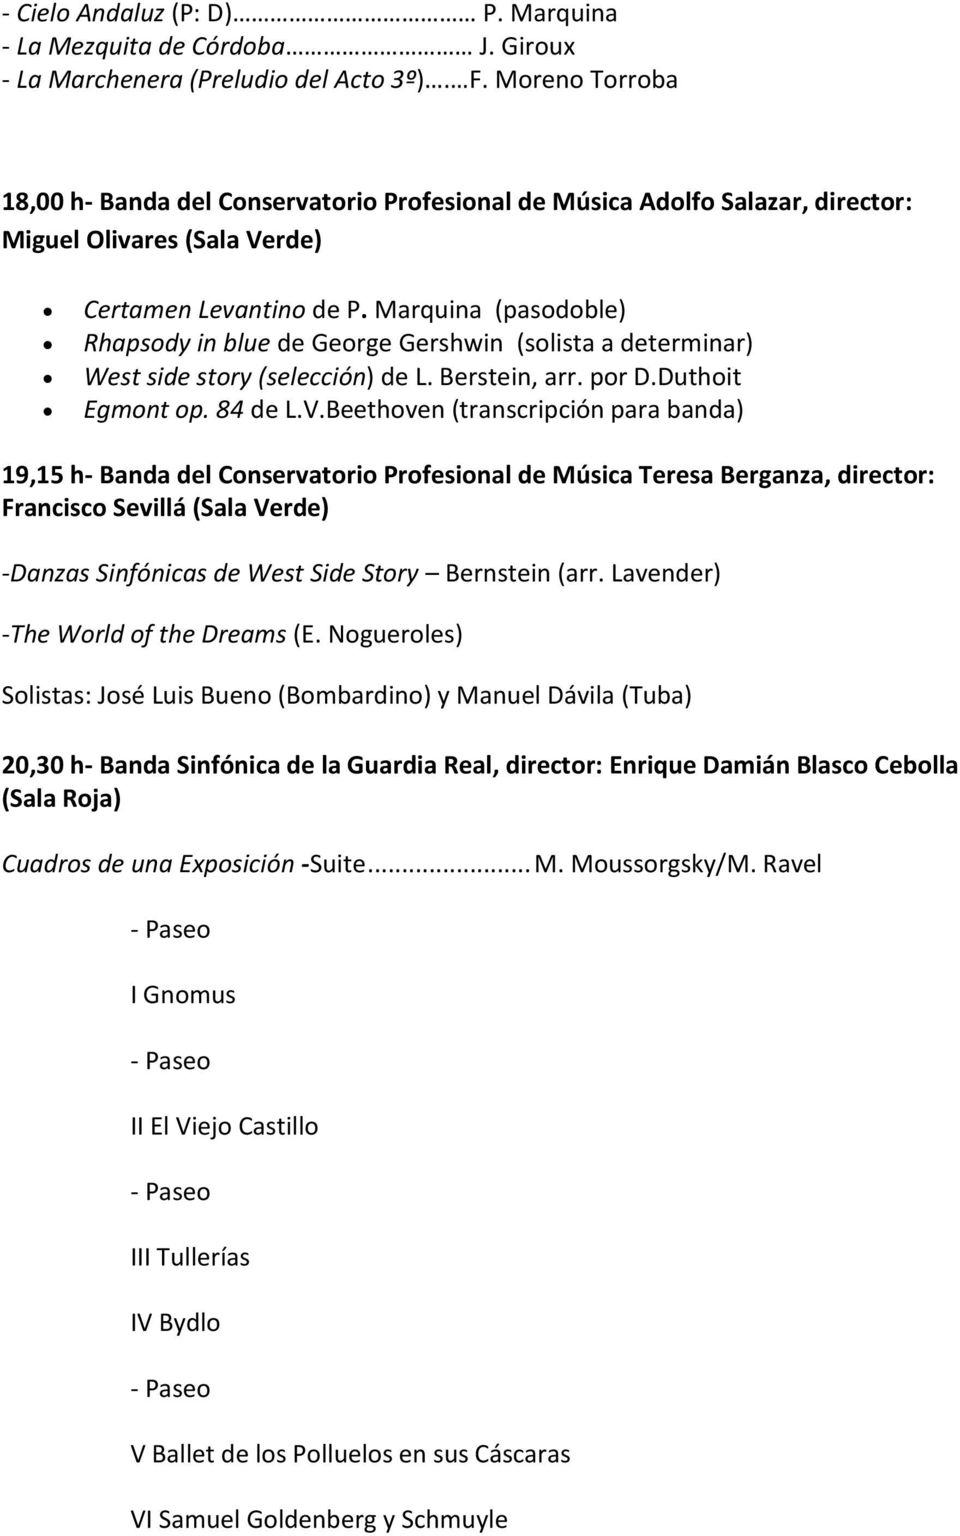 Marquina (pasodoble) Rhapsody in blue de George Gershwin (solista a determinar) West side story (selección) de L. Berstein, arr. por D.Duthoit Egmont op. 84 de L.V.